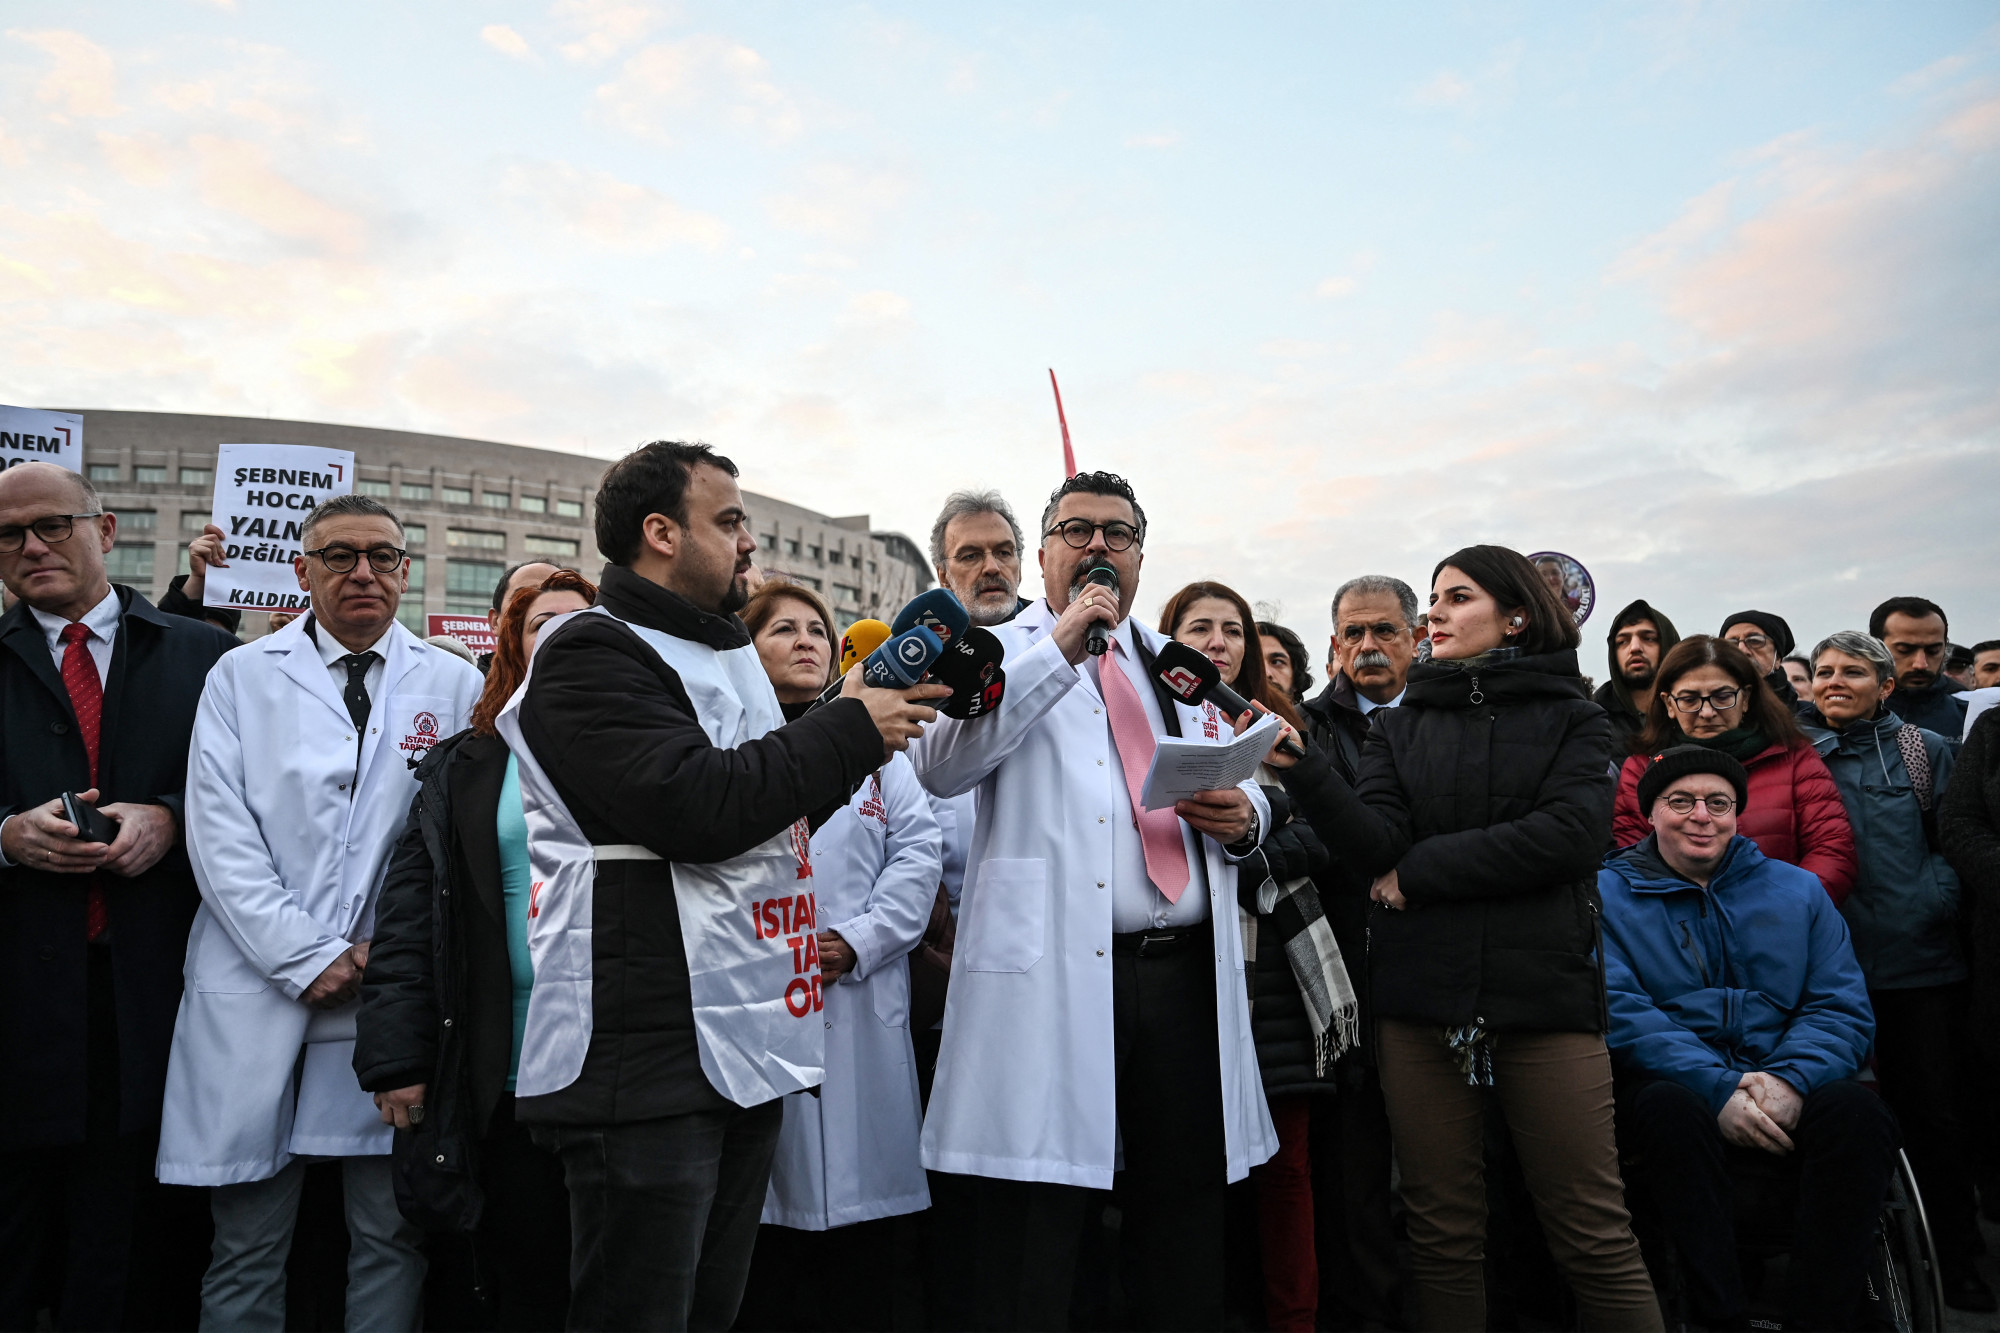 Gyilkosság, orvosok elleni erőszak és tömeges elvándorlás - összeomlás szélén a török egészségügy